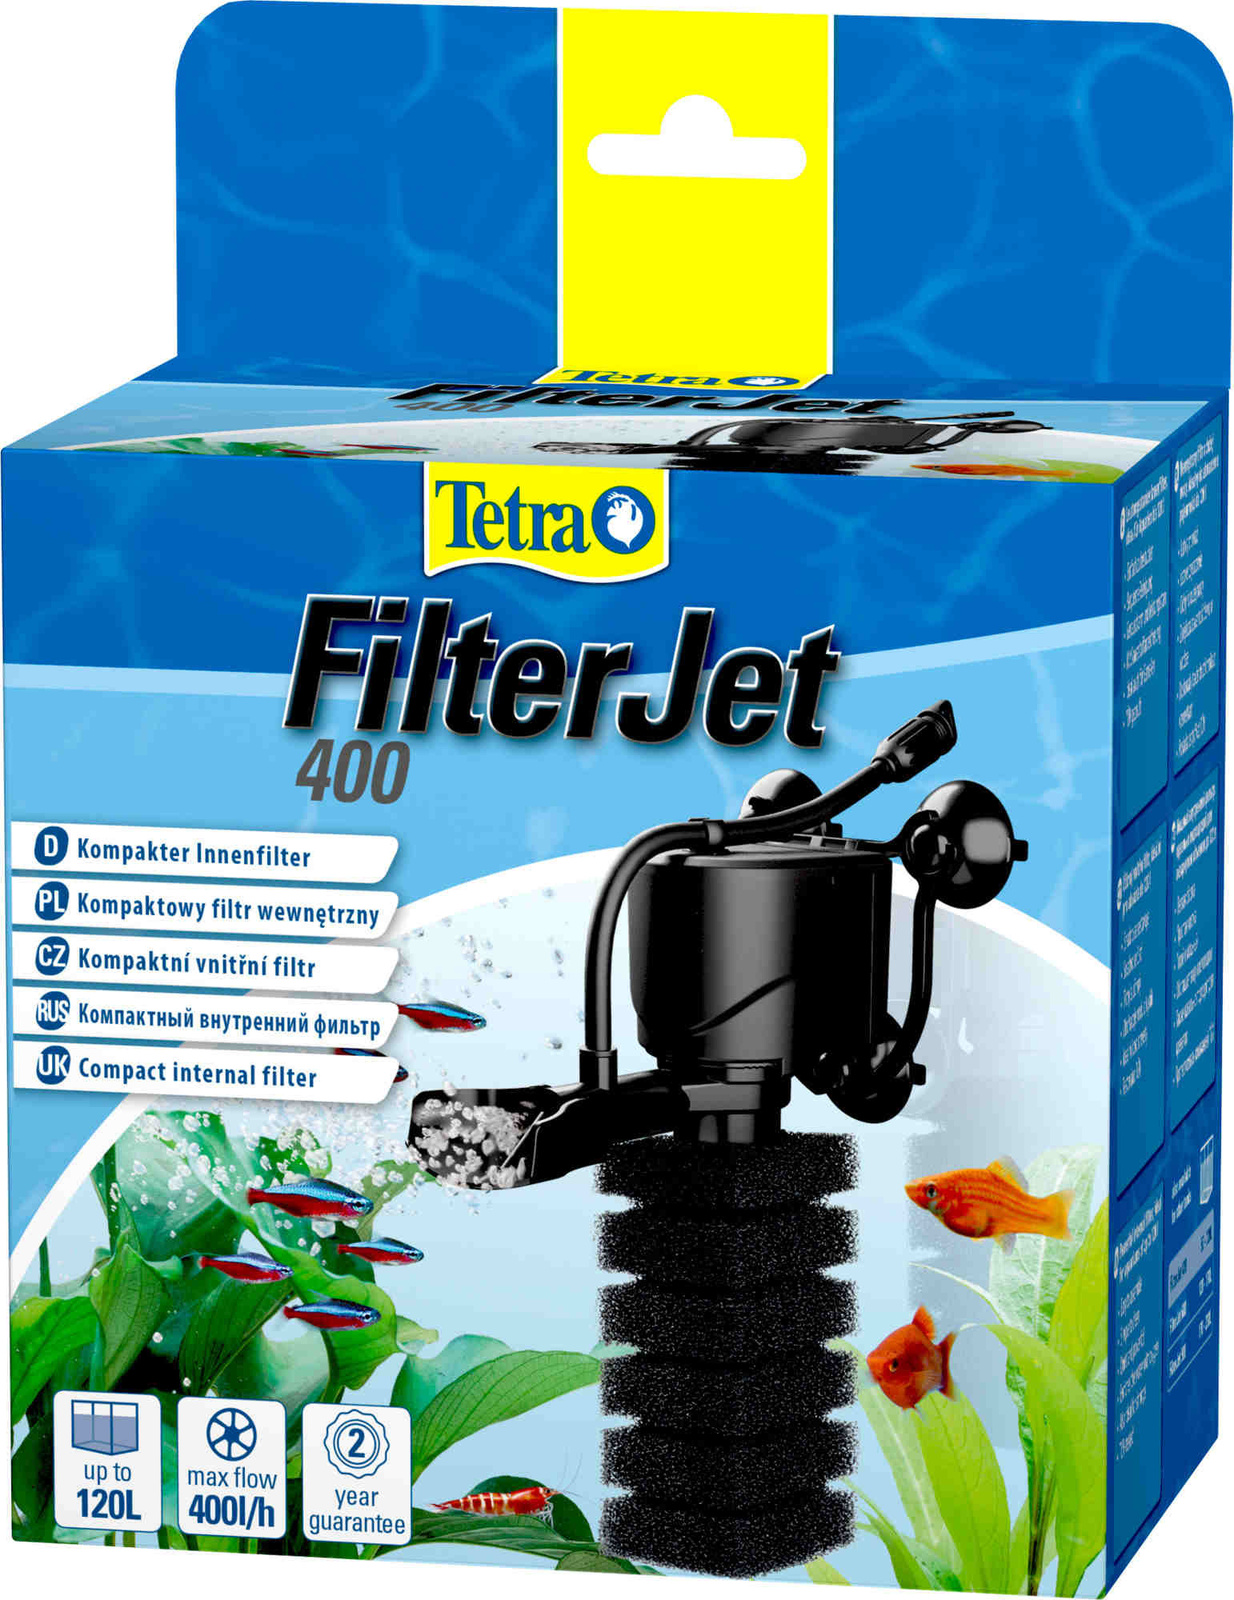 Tetra (оборудование) Tetra (оборудование) внутренний фильтр FilterJet 400, для аквариумов 50 – 120л (460 г) фильтр внешний tetra ex 400 plus для аквариумов 10 80л